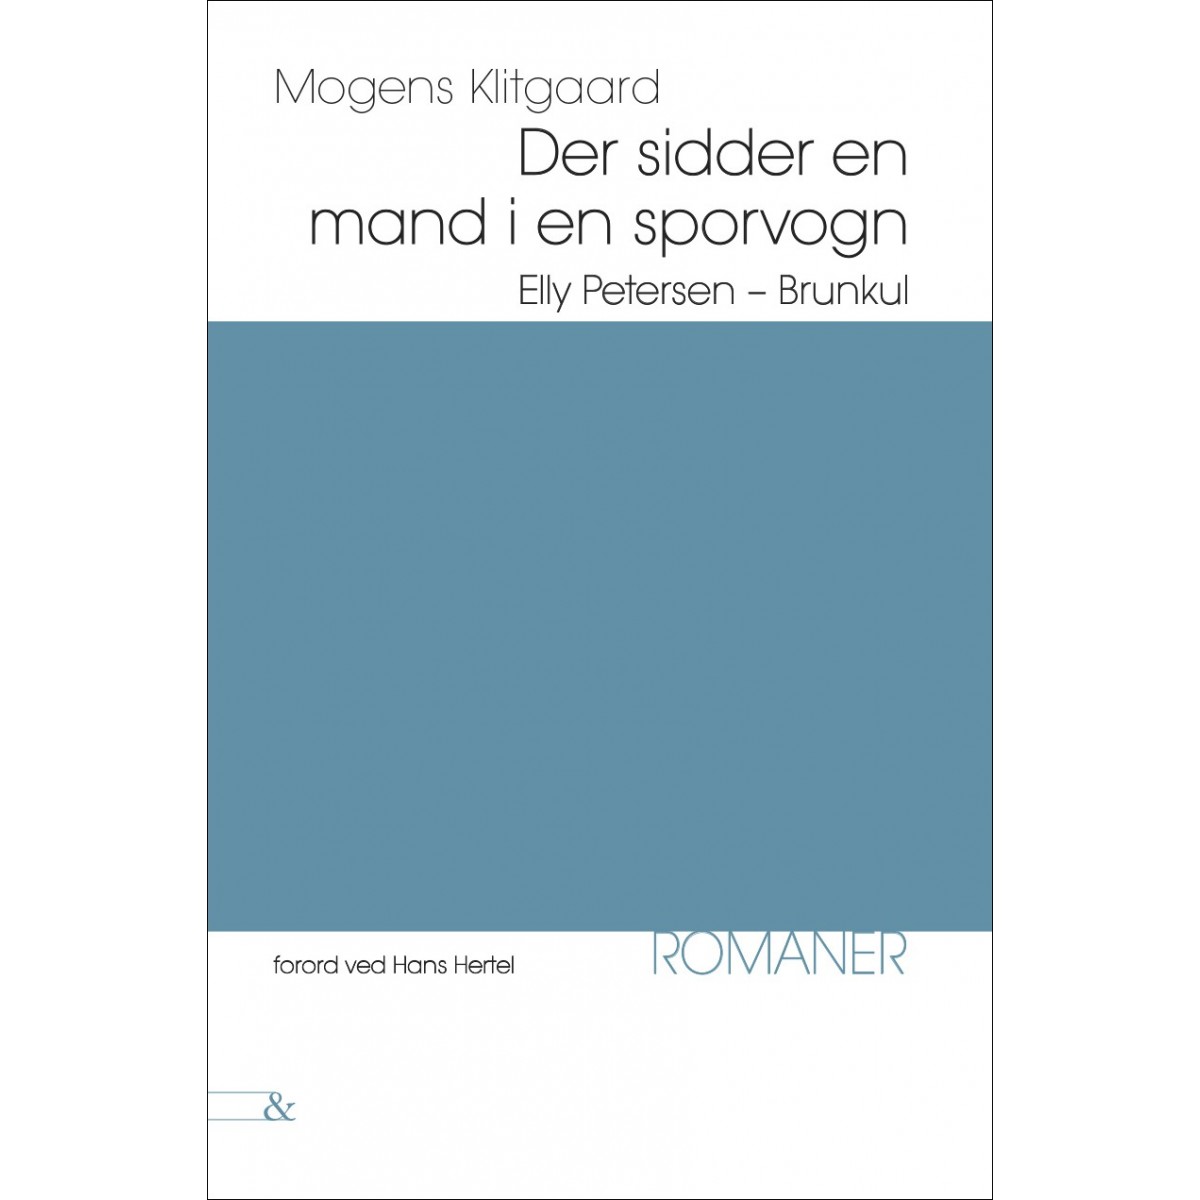 Mogens Klitgaard: Der sidder en mand i en sporvogn - Elly Petersen - Brunkul